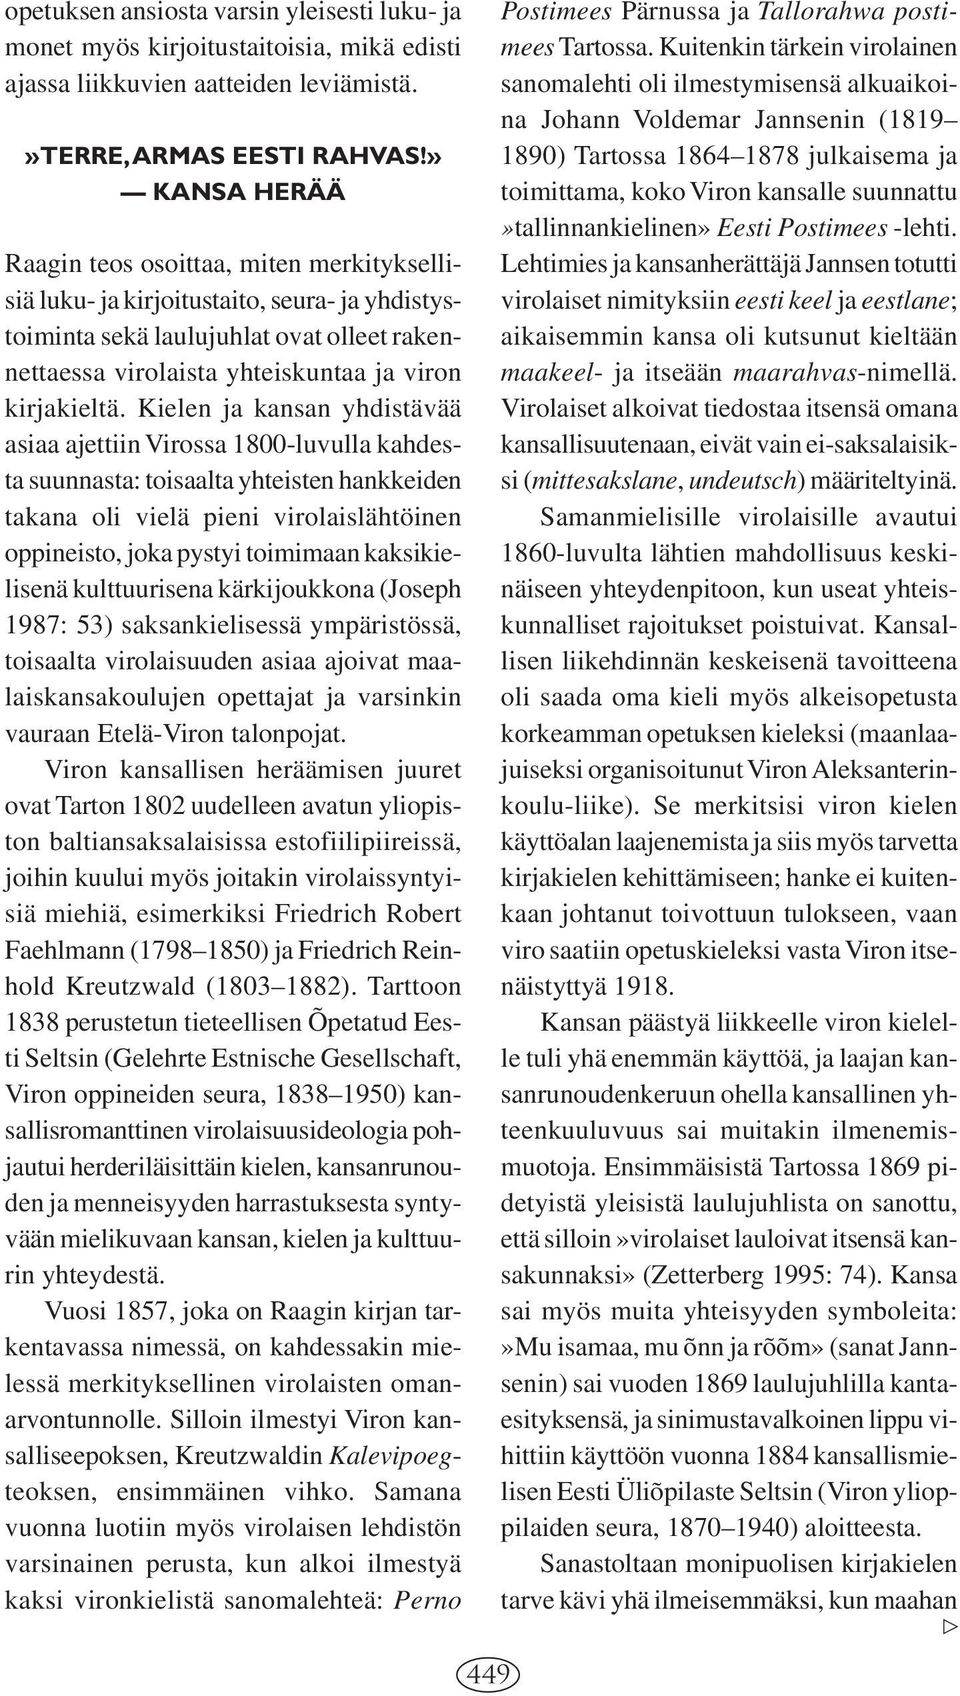 Kielen ja kansan yhdistävää asiaa ajettiin Virossa 1800-luvulla kahdesta suunnasta: toisaalta yhteisten hankkeiden takana oli vielä pieni virolaislähtöinen oppineisto, joka pystyi toimimaan